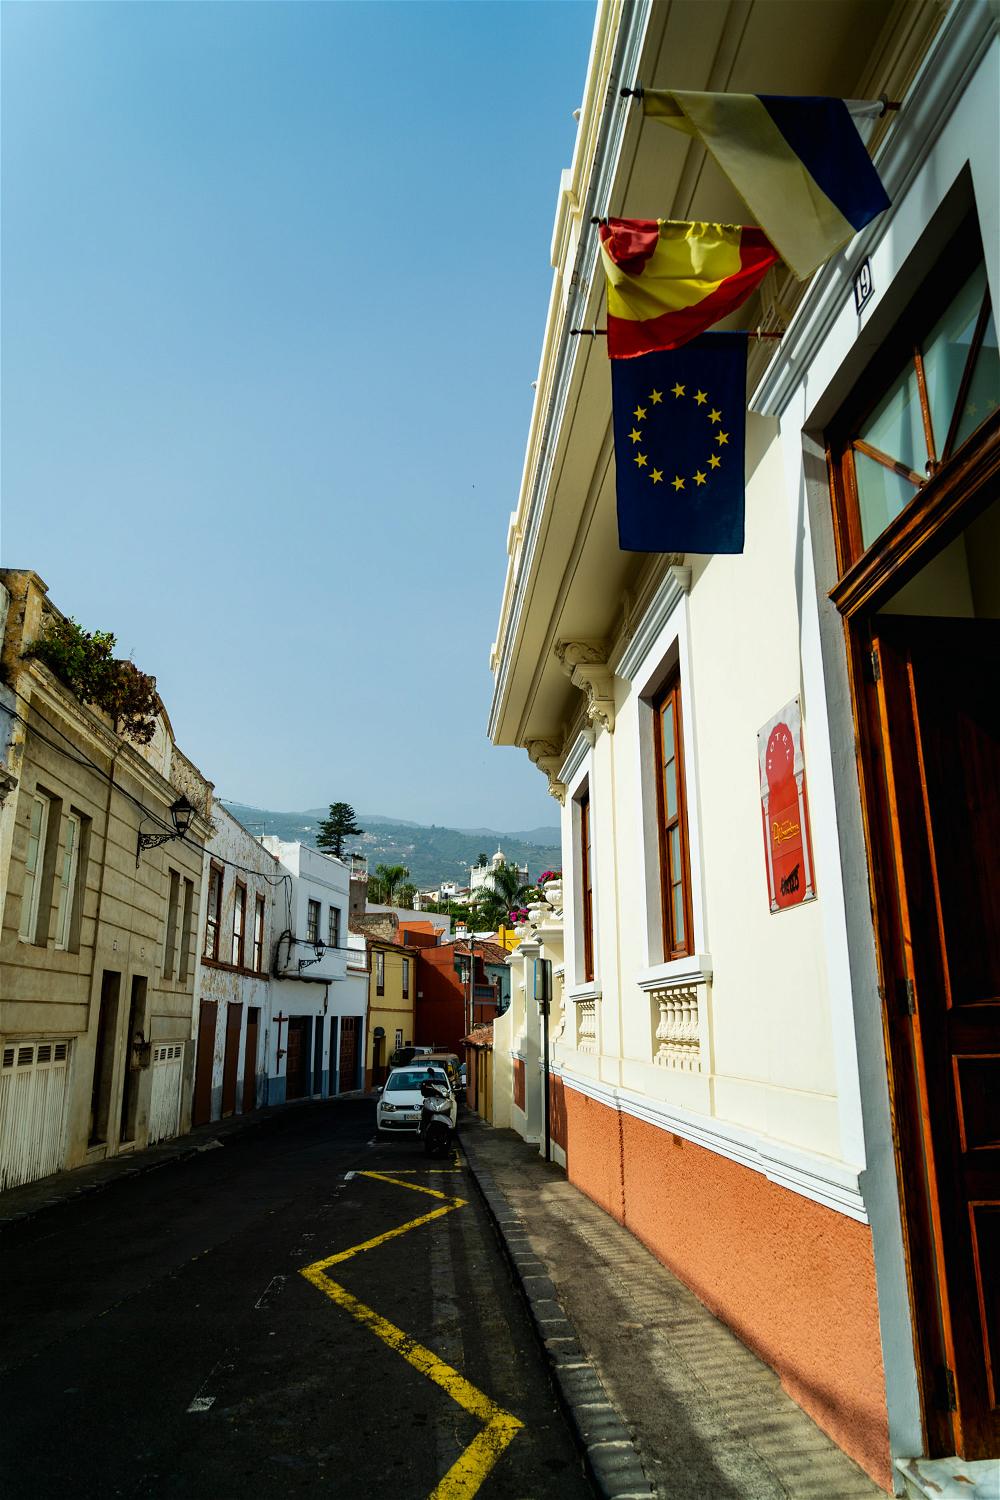 Quiet street scene of village in Tenerife